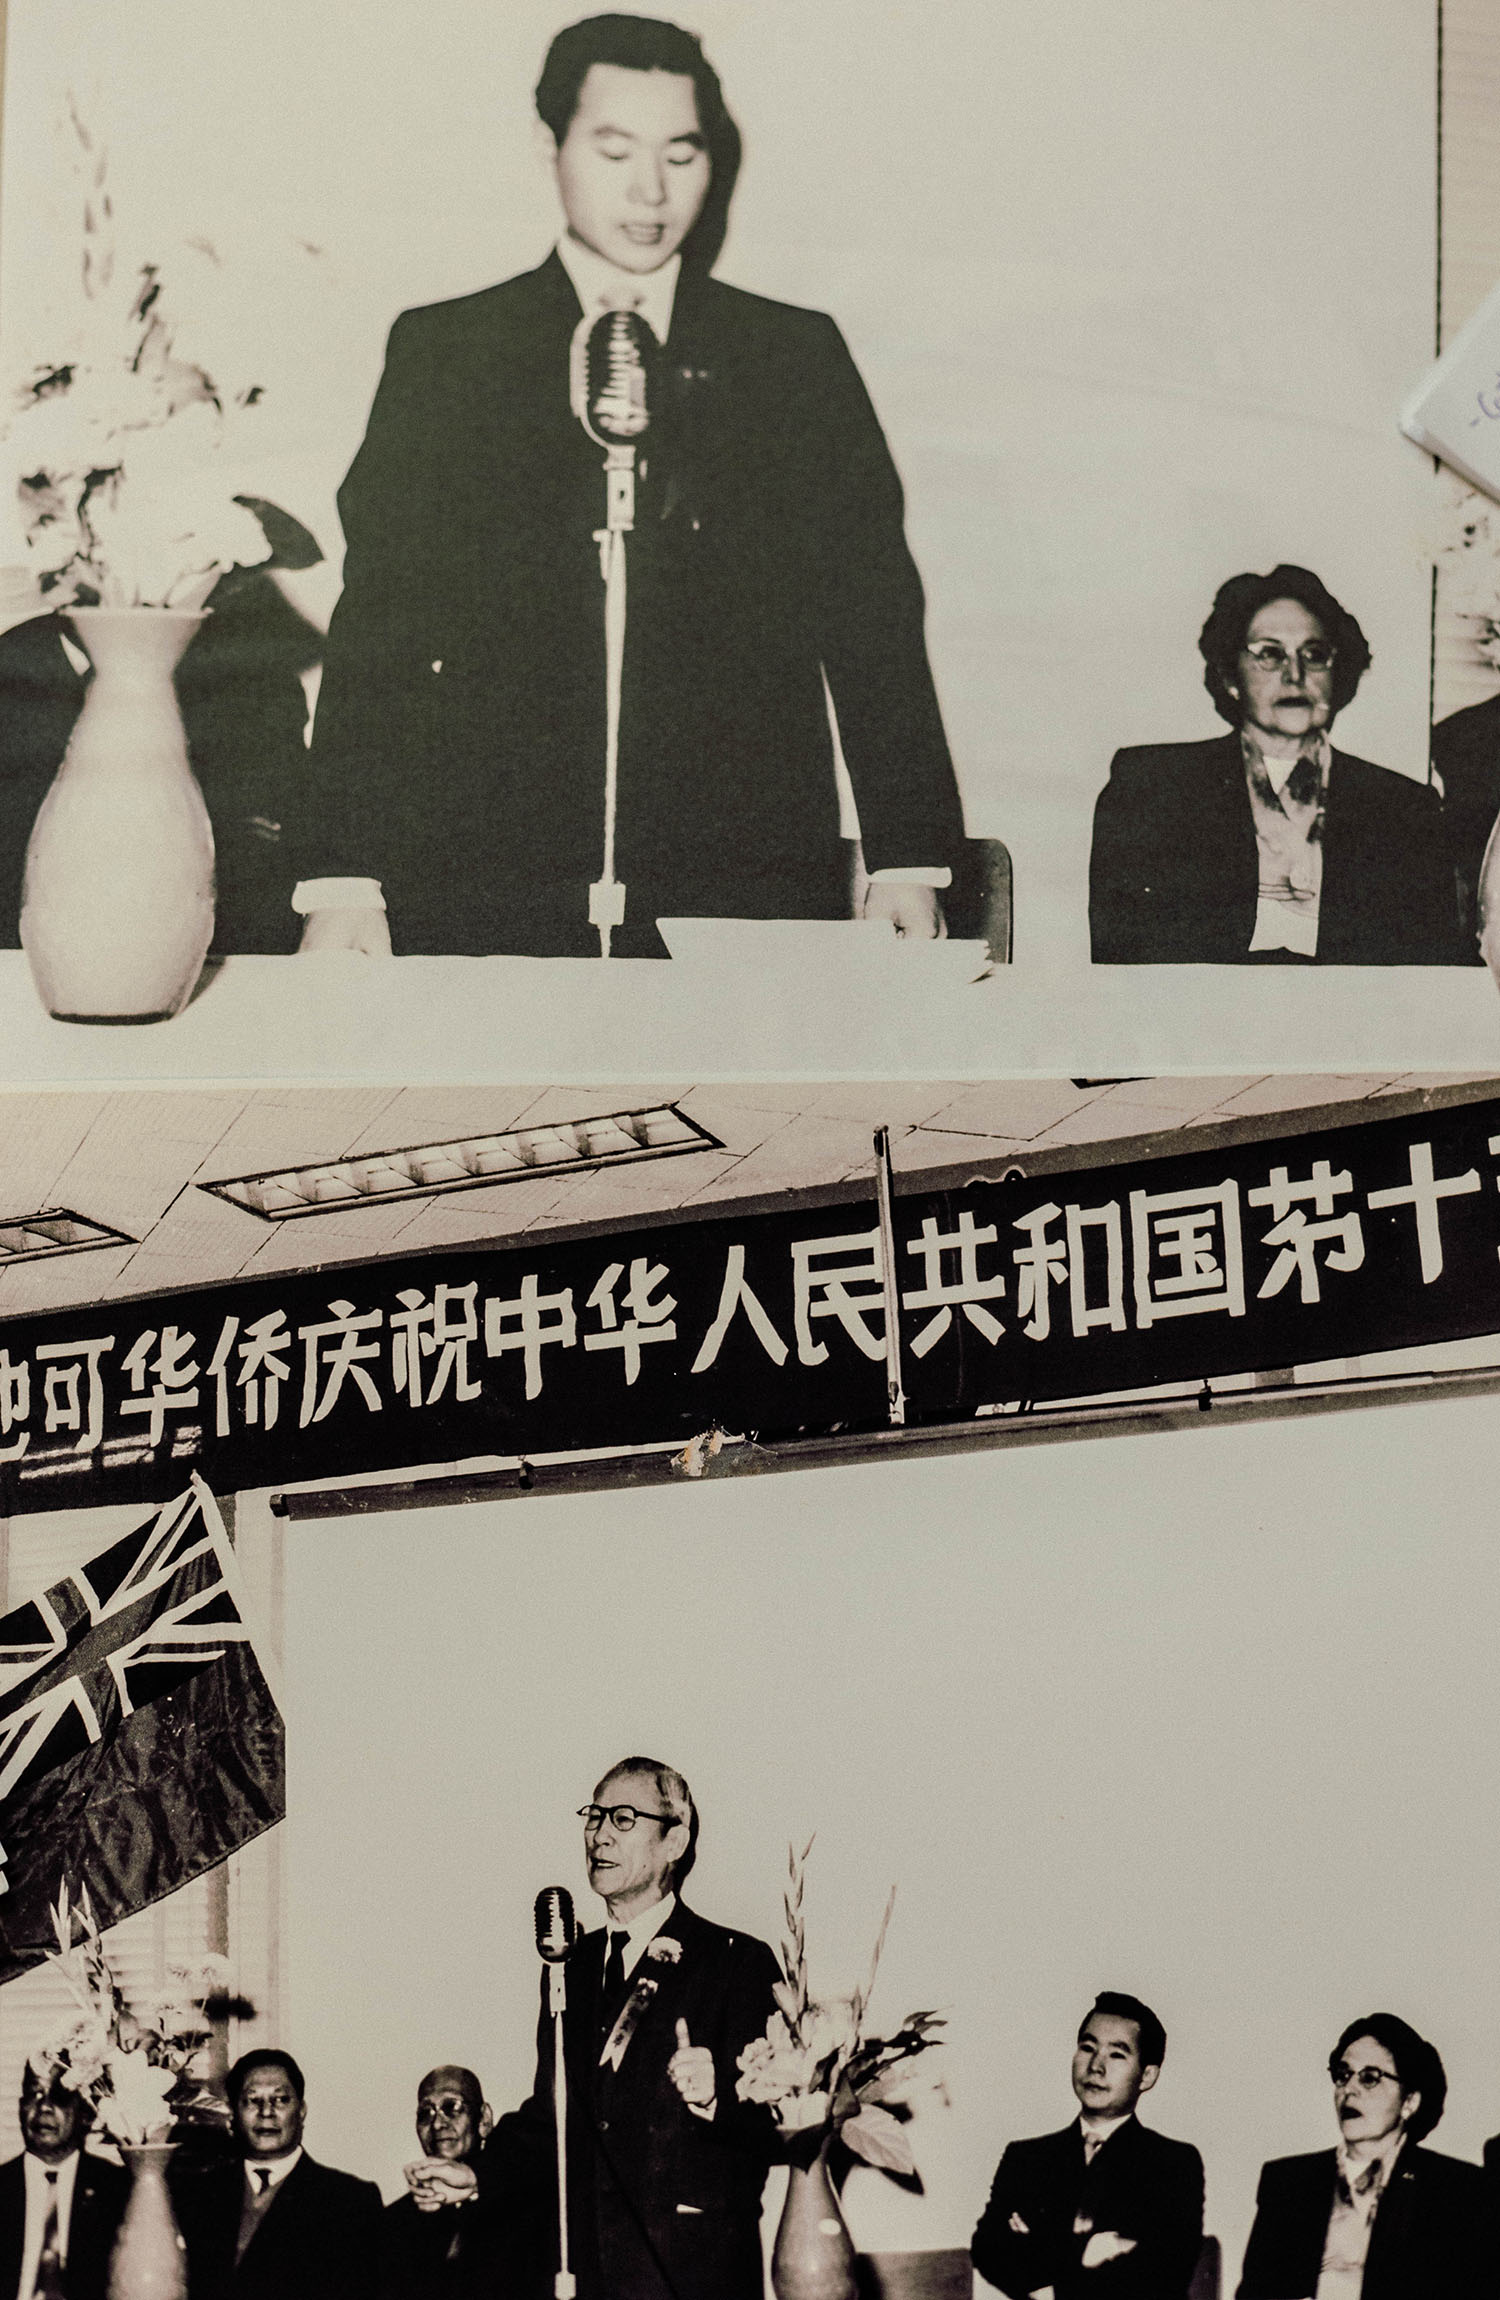 Cette image montre deux photos en noir et blanc. Celle du haut montre un homme d’origine chinoise debout derrière une table, un micro devant lui, et une dame assise à ses côtés. Celle du bas un homme debout au micro et de chaque côté des hommes assis.